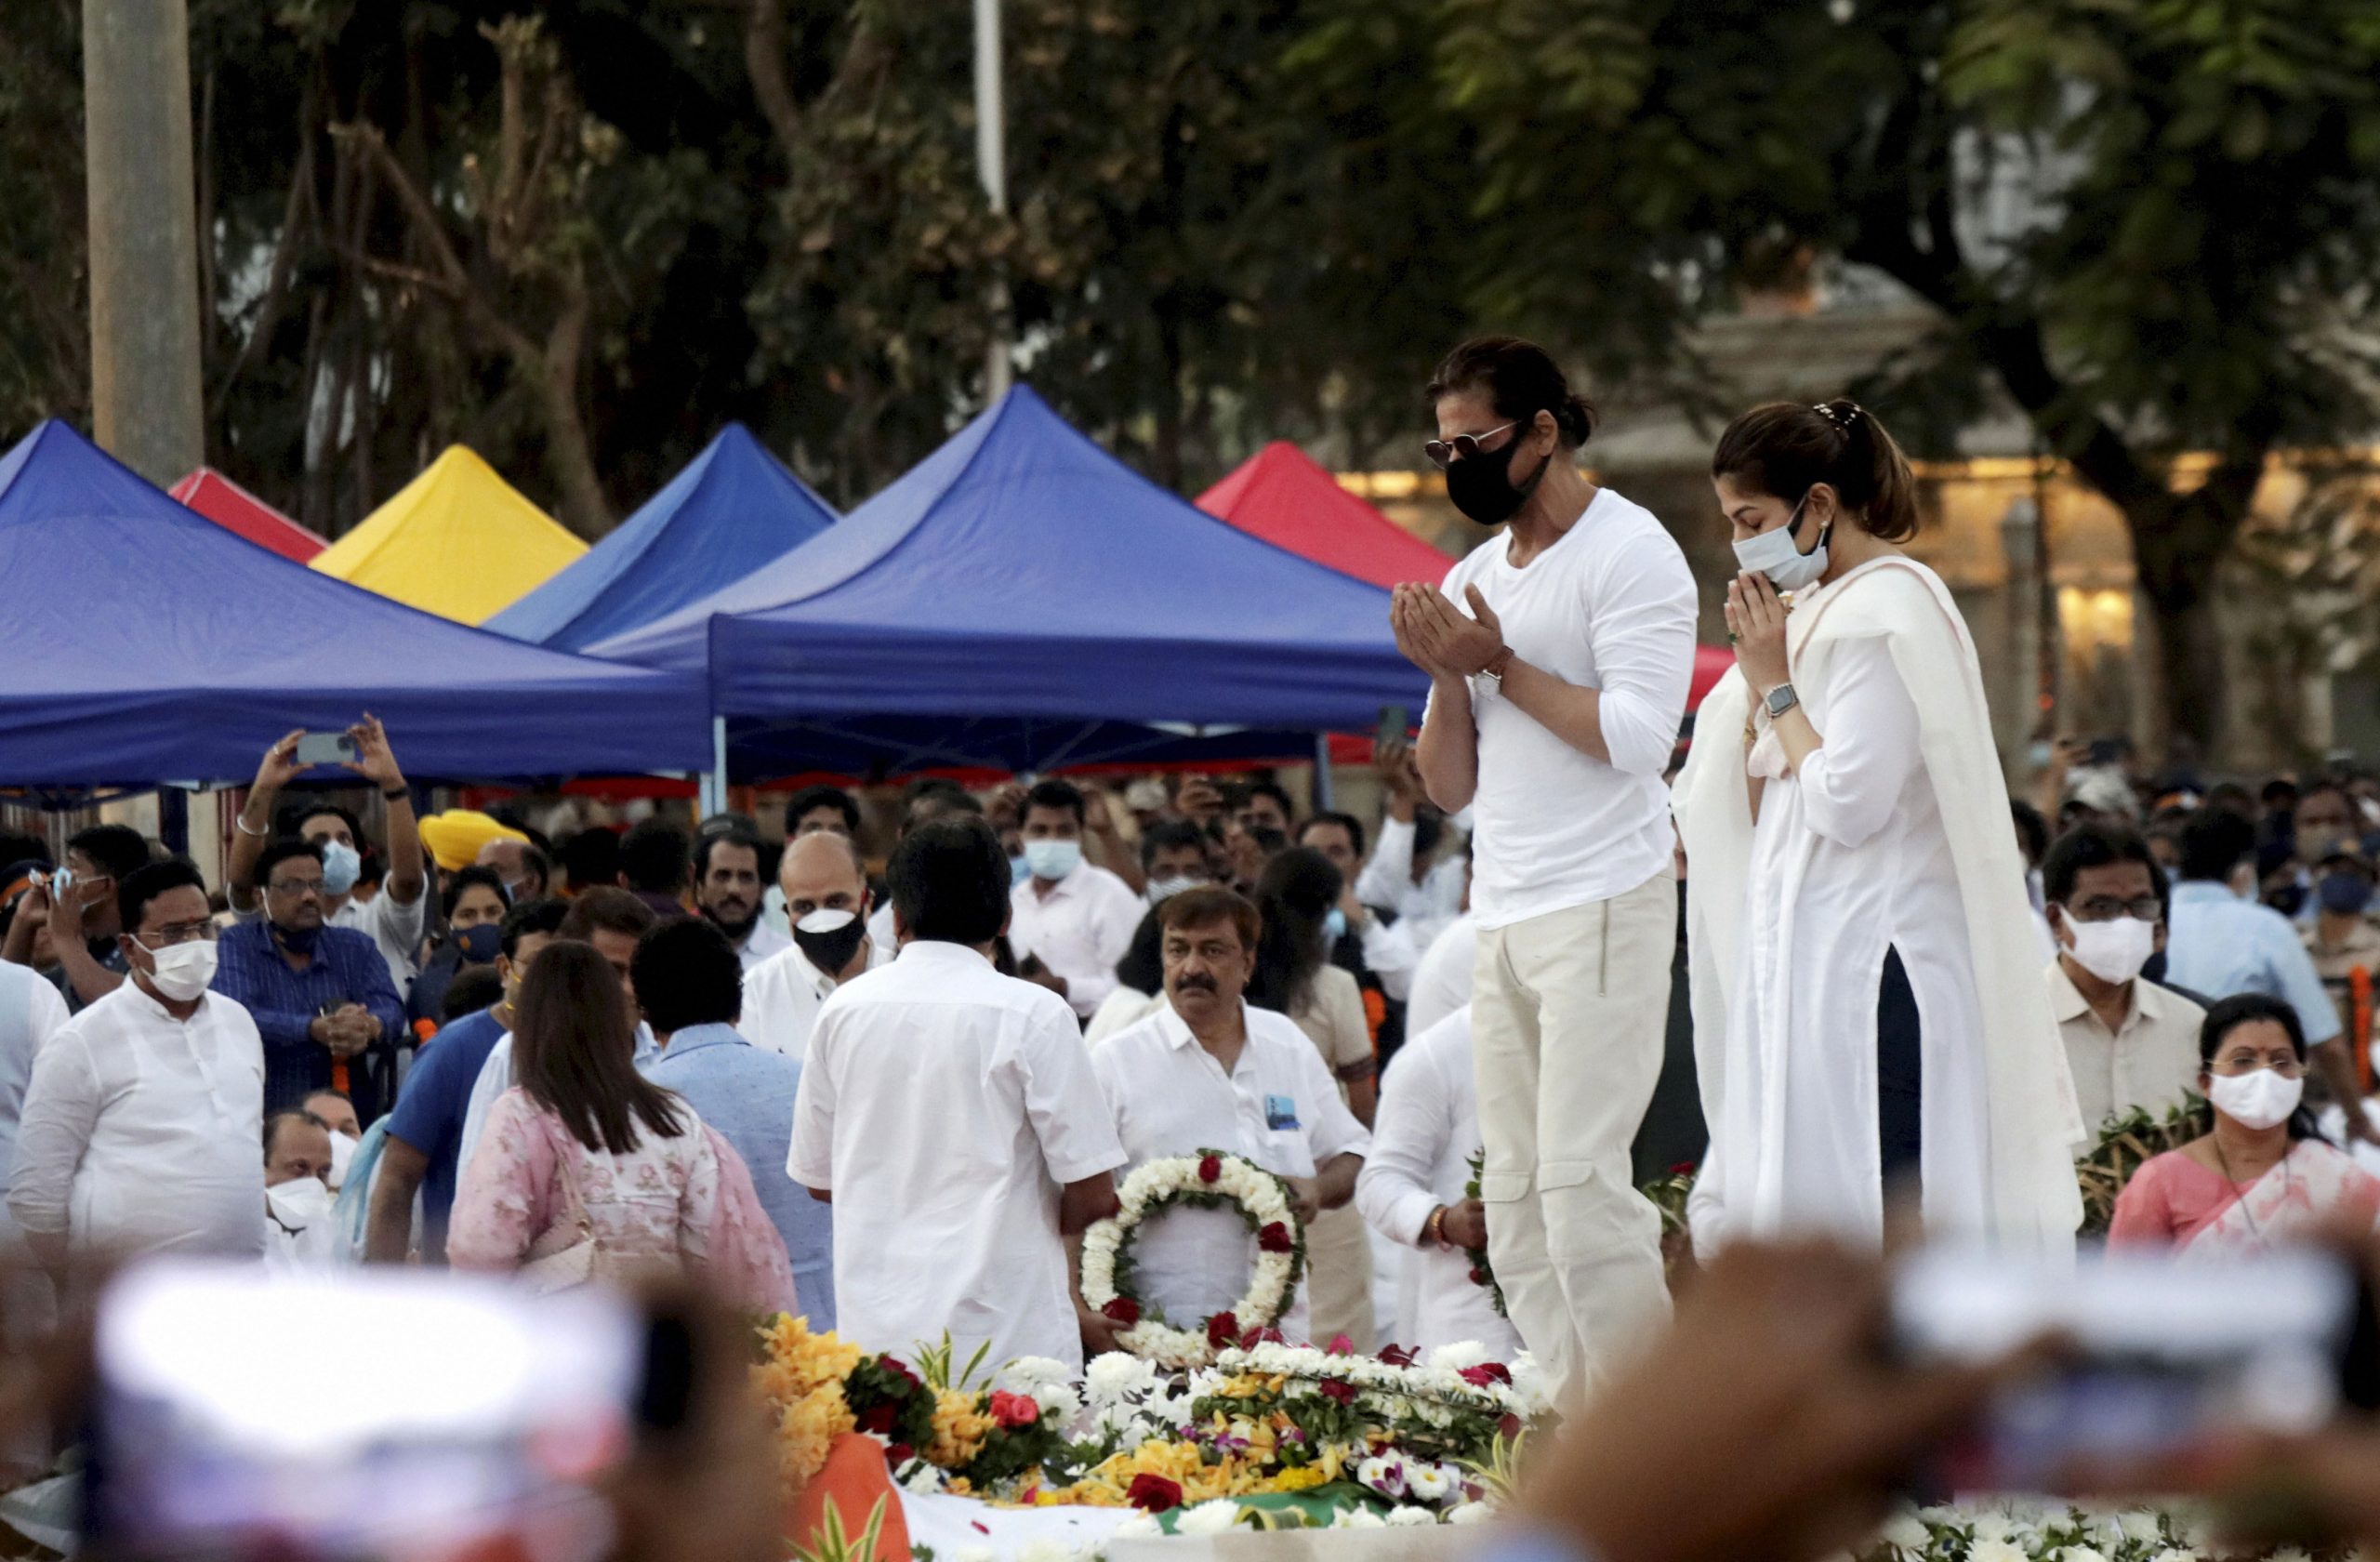 Shah Rukh Khan raises hands in dua at Lata Mangeshkar’s funeral, fans say he won their hearts | Watch